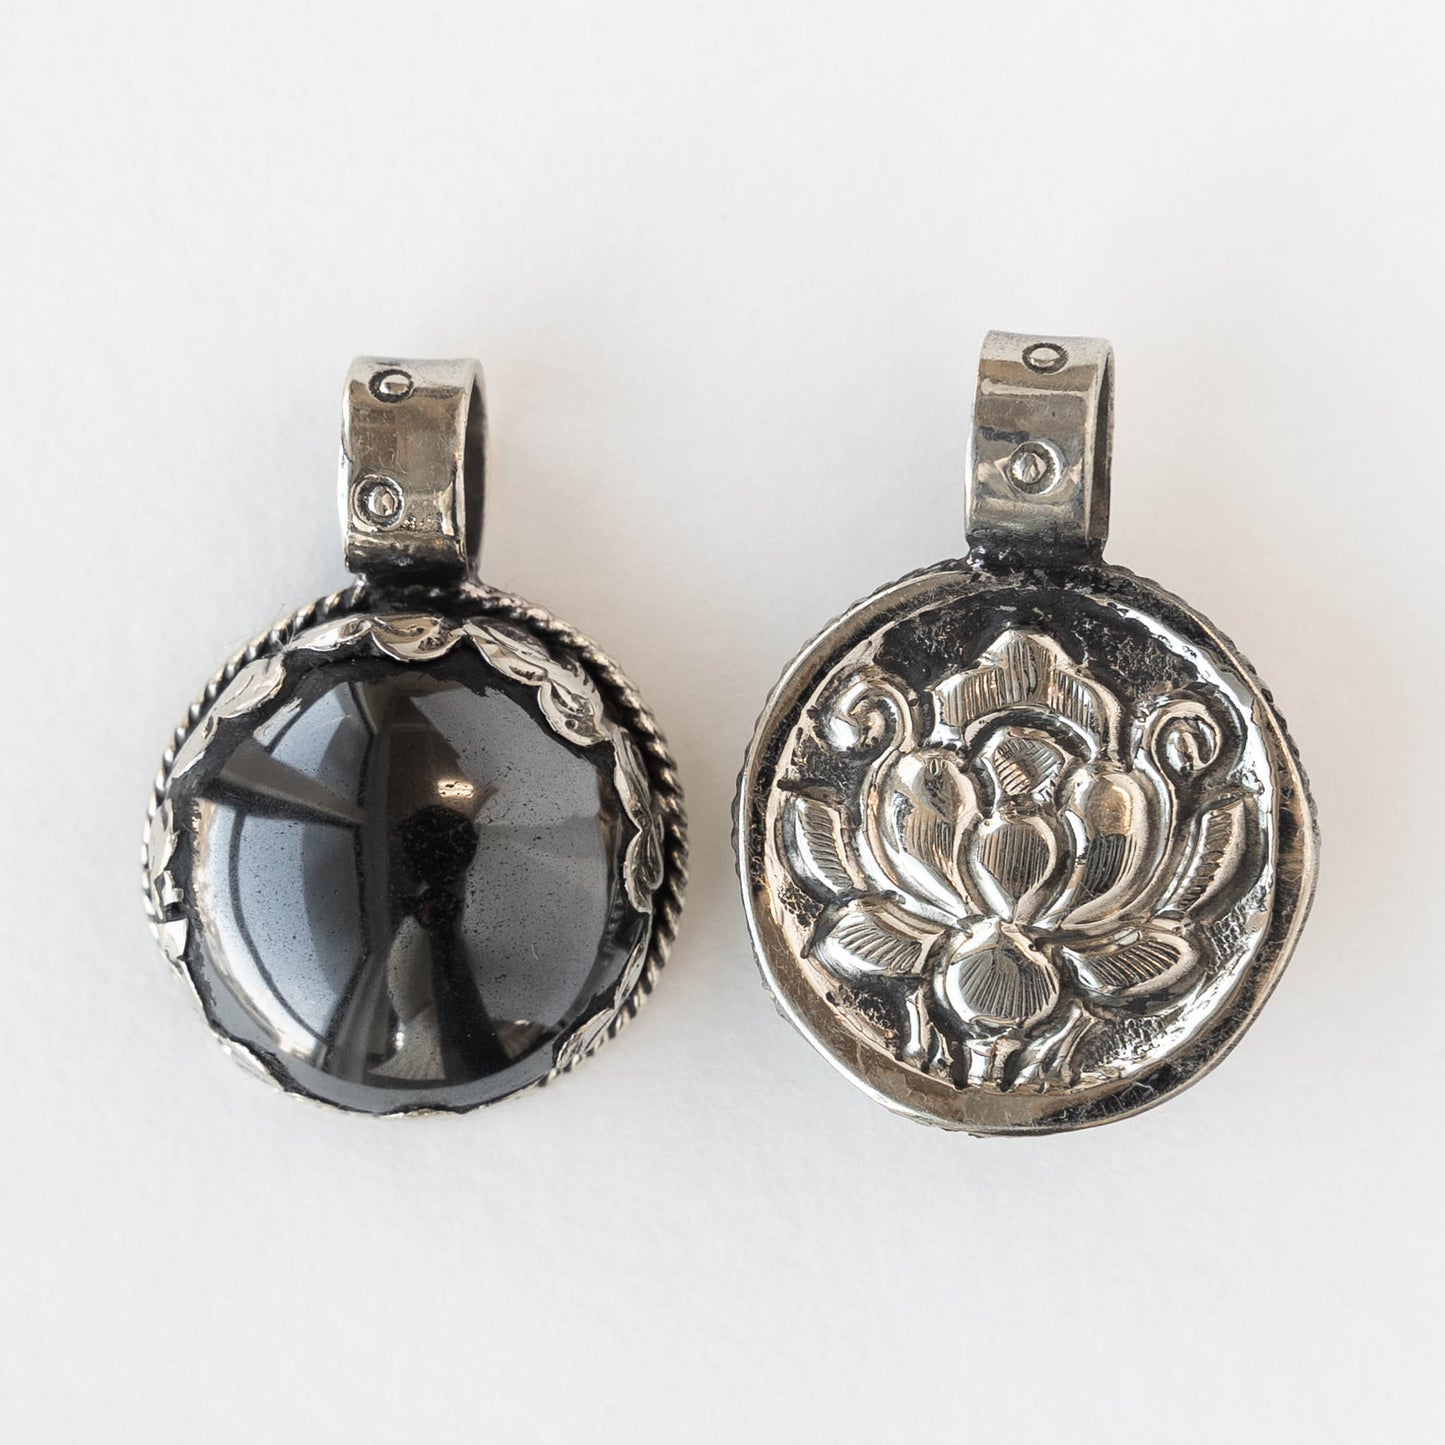 24mm Round Hematite Pendant set  in Tibetan Silver- 1 piece